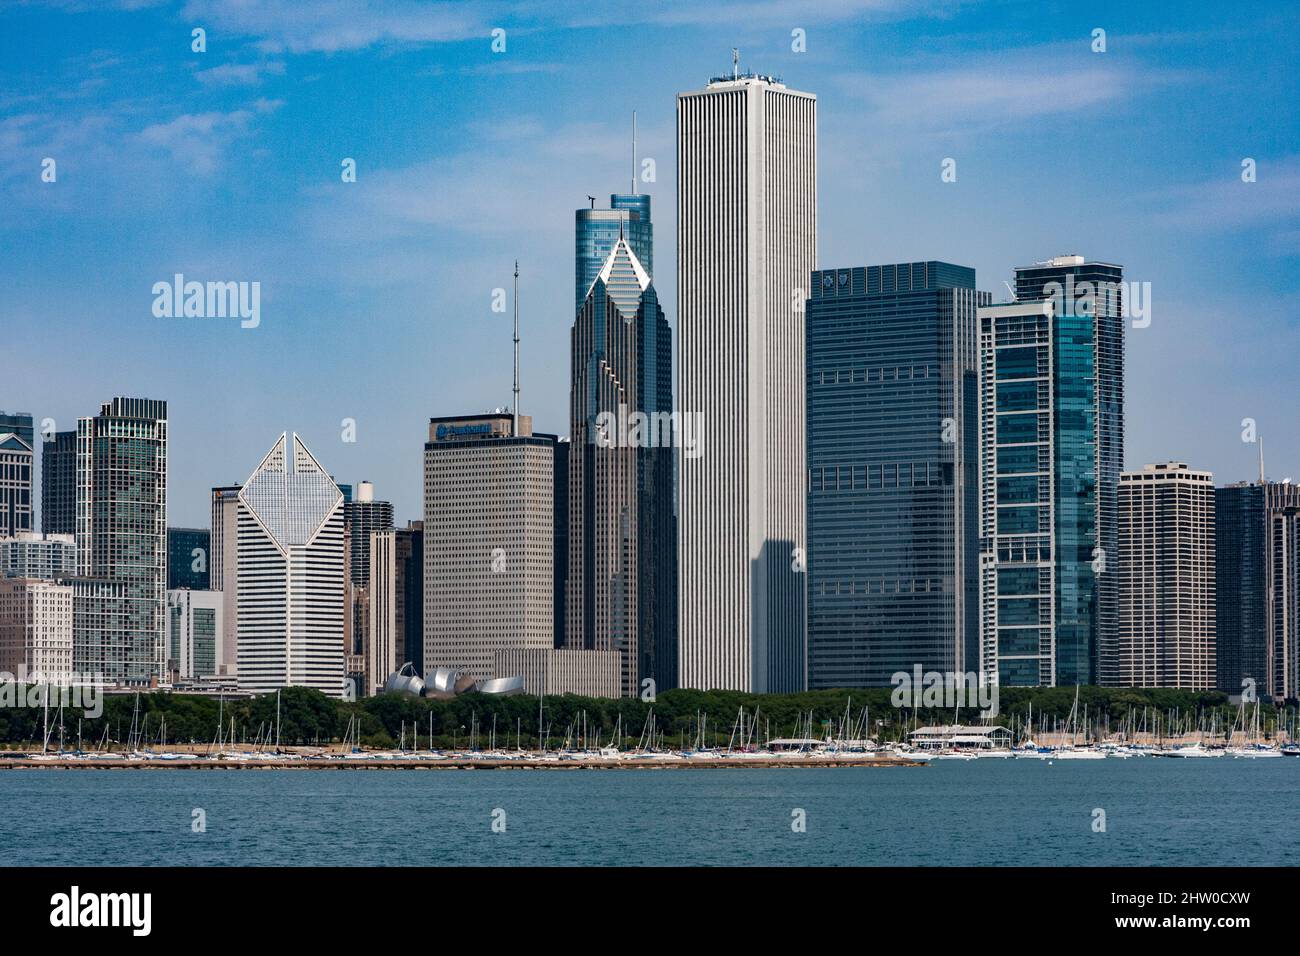 Gratte-ciels de Chicago. AON Centre au milieu, un et deux bâtiments Prudential Plaza adjacents à gauche, en face de la Trump Tower, Crain Communications Bld. Banque D'Images